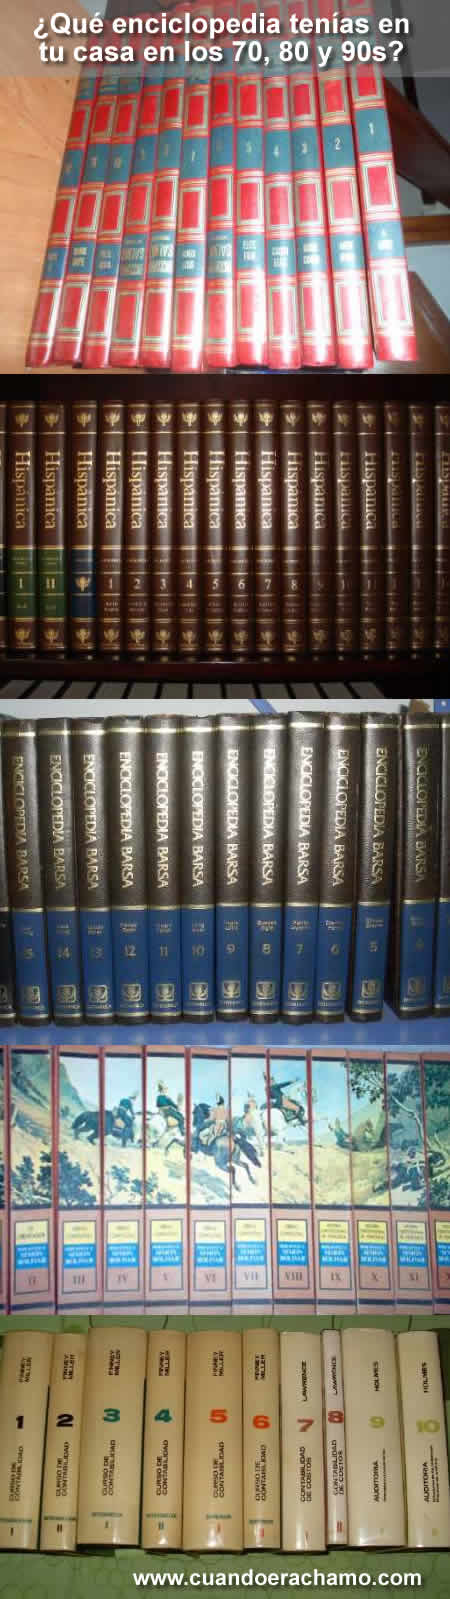 enciclopedias de los 70, 80 y 90